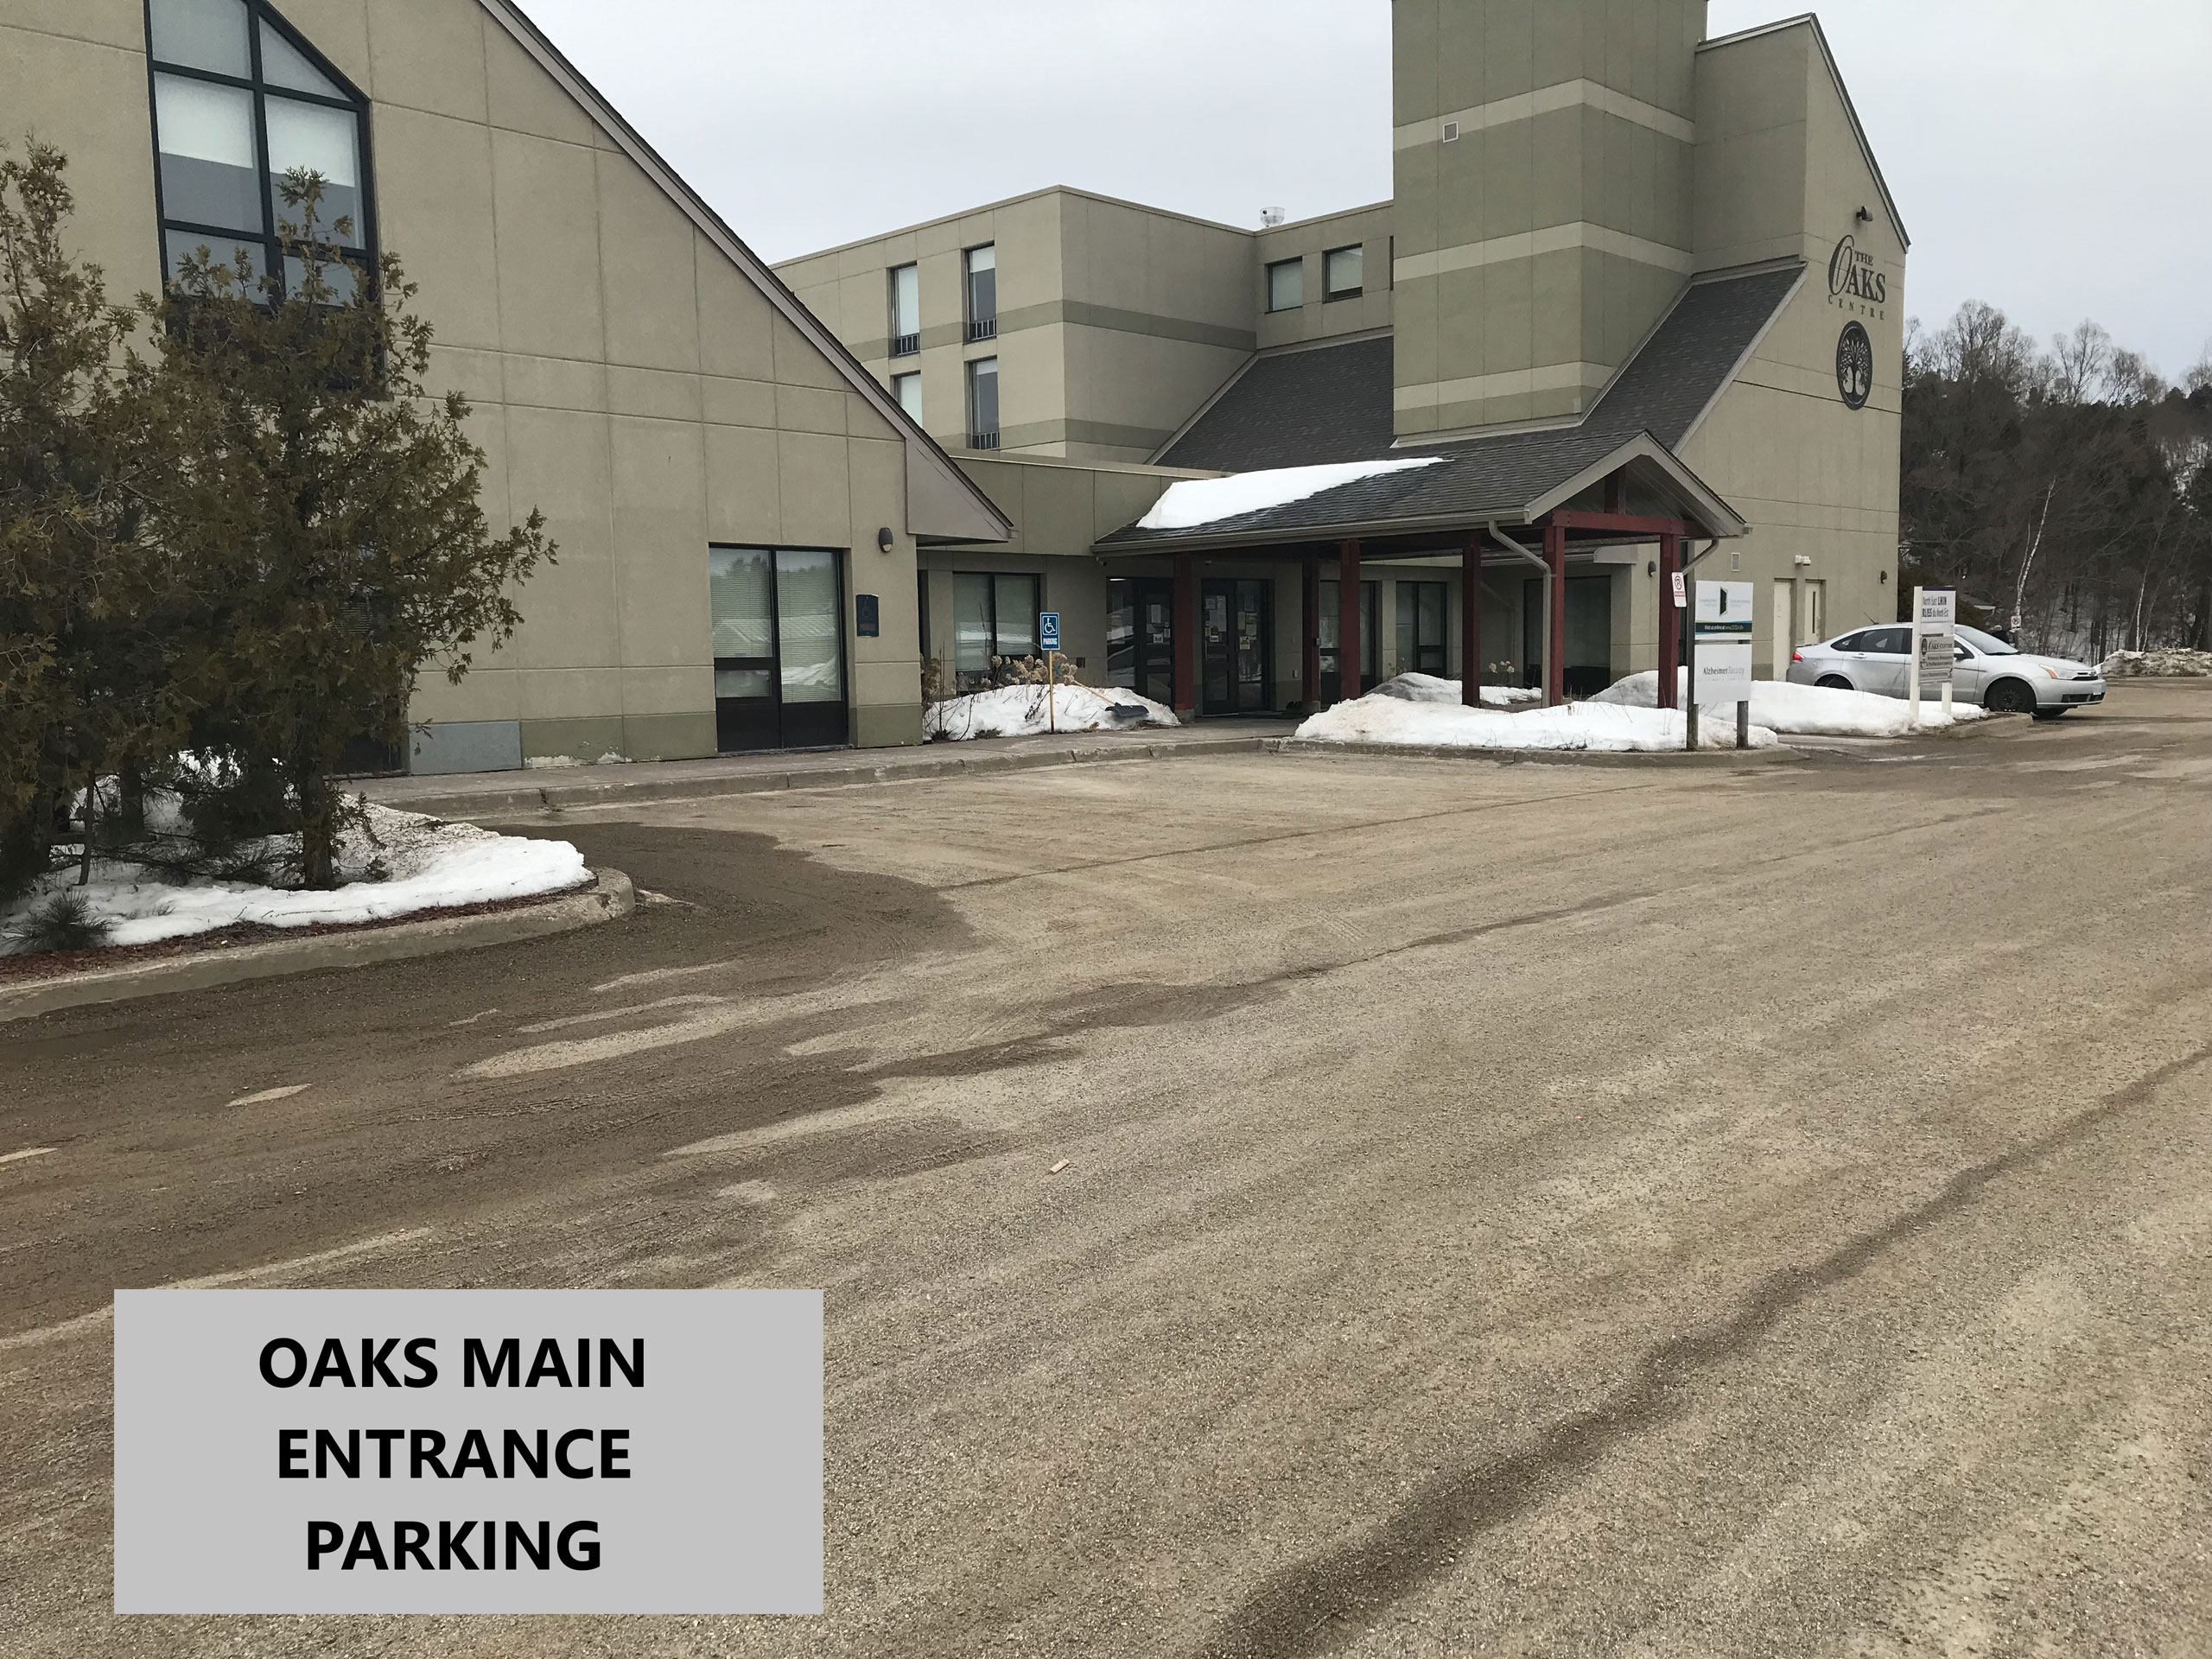 Oaks parking main